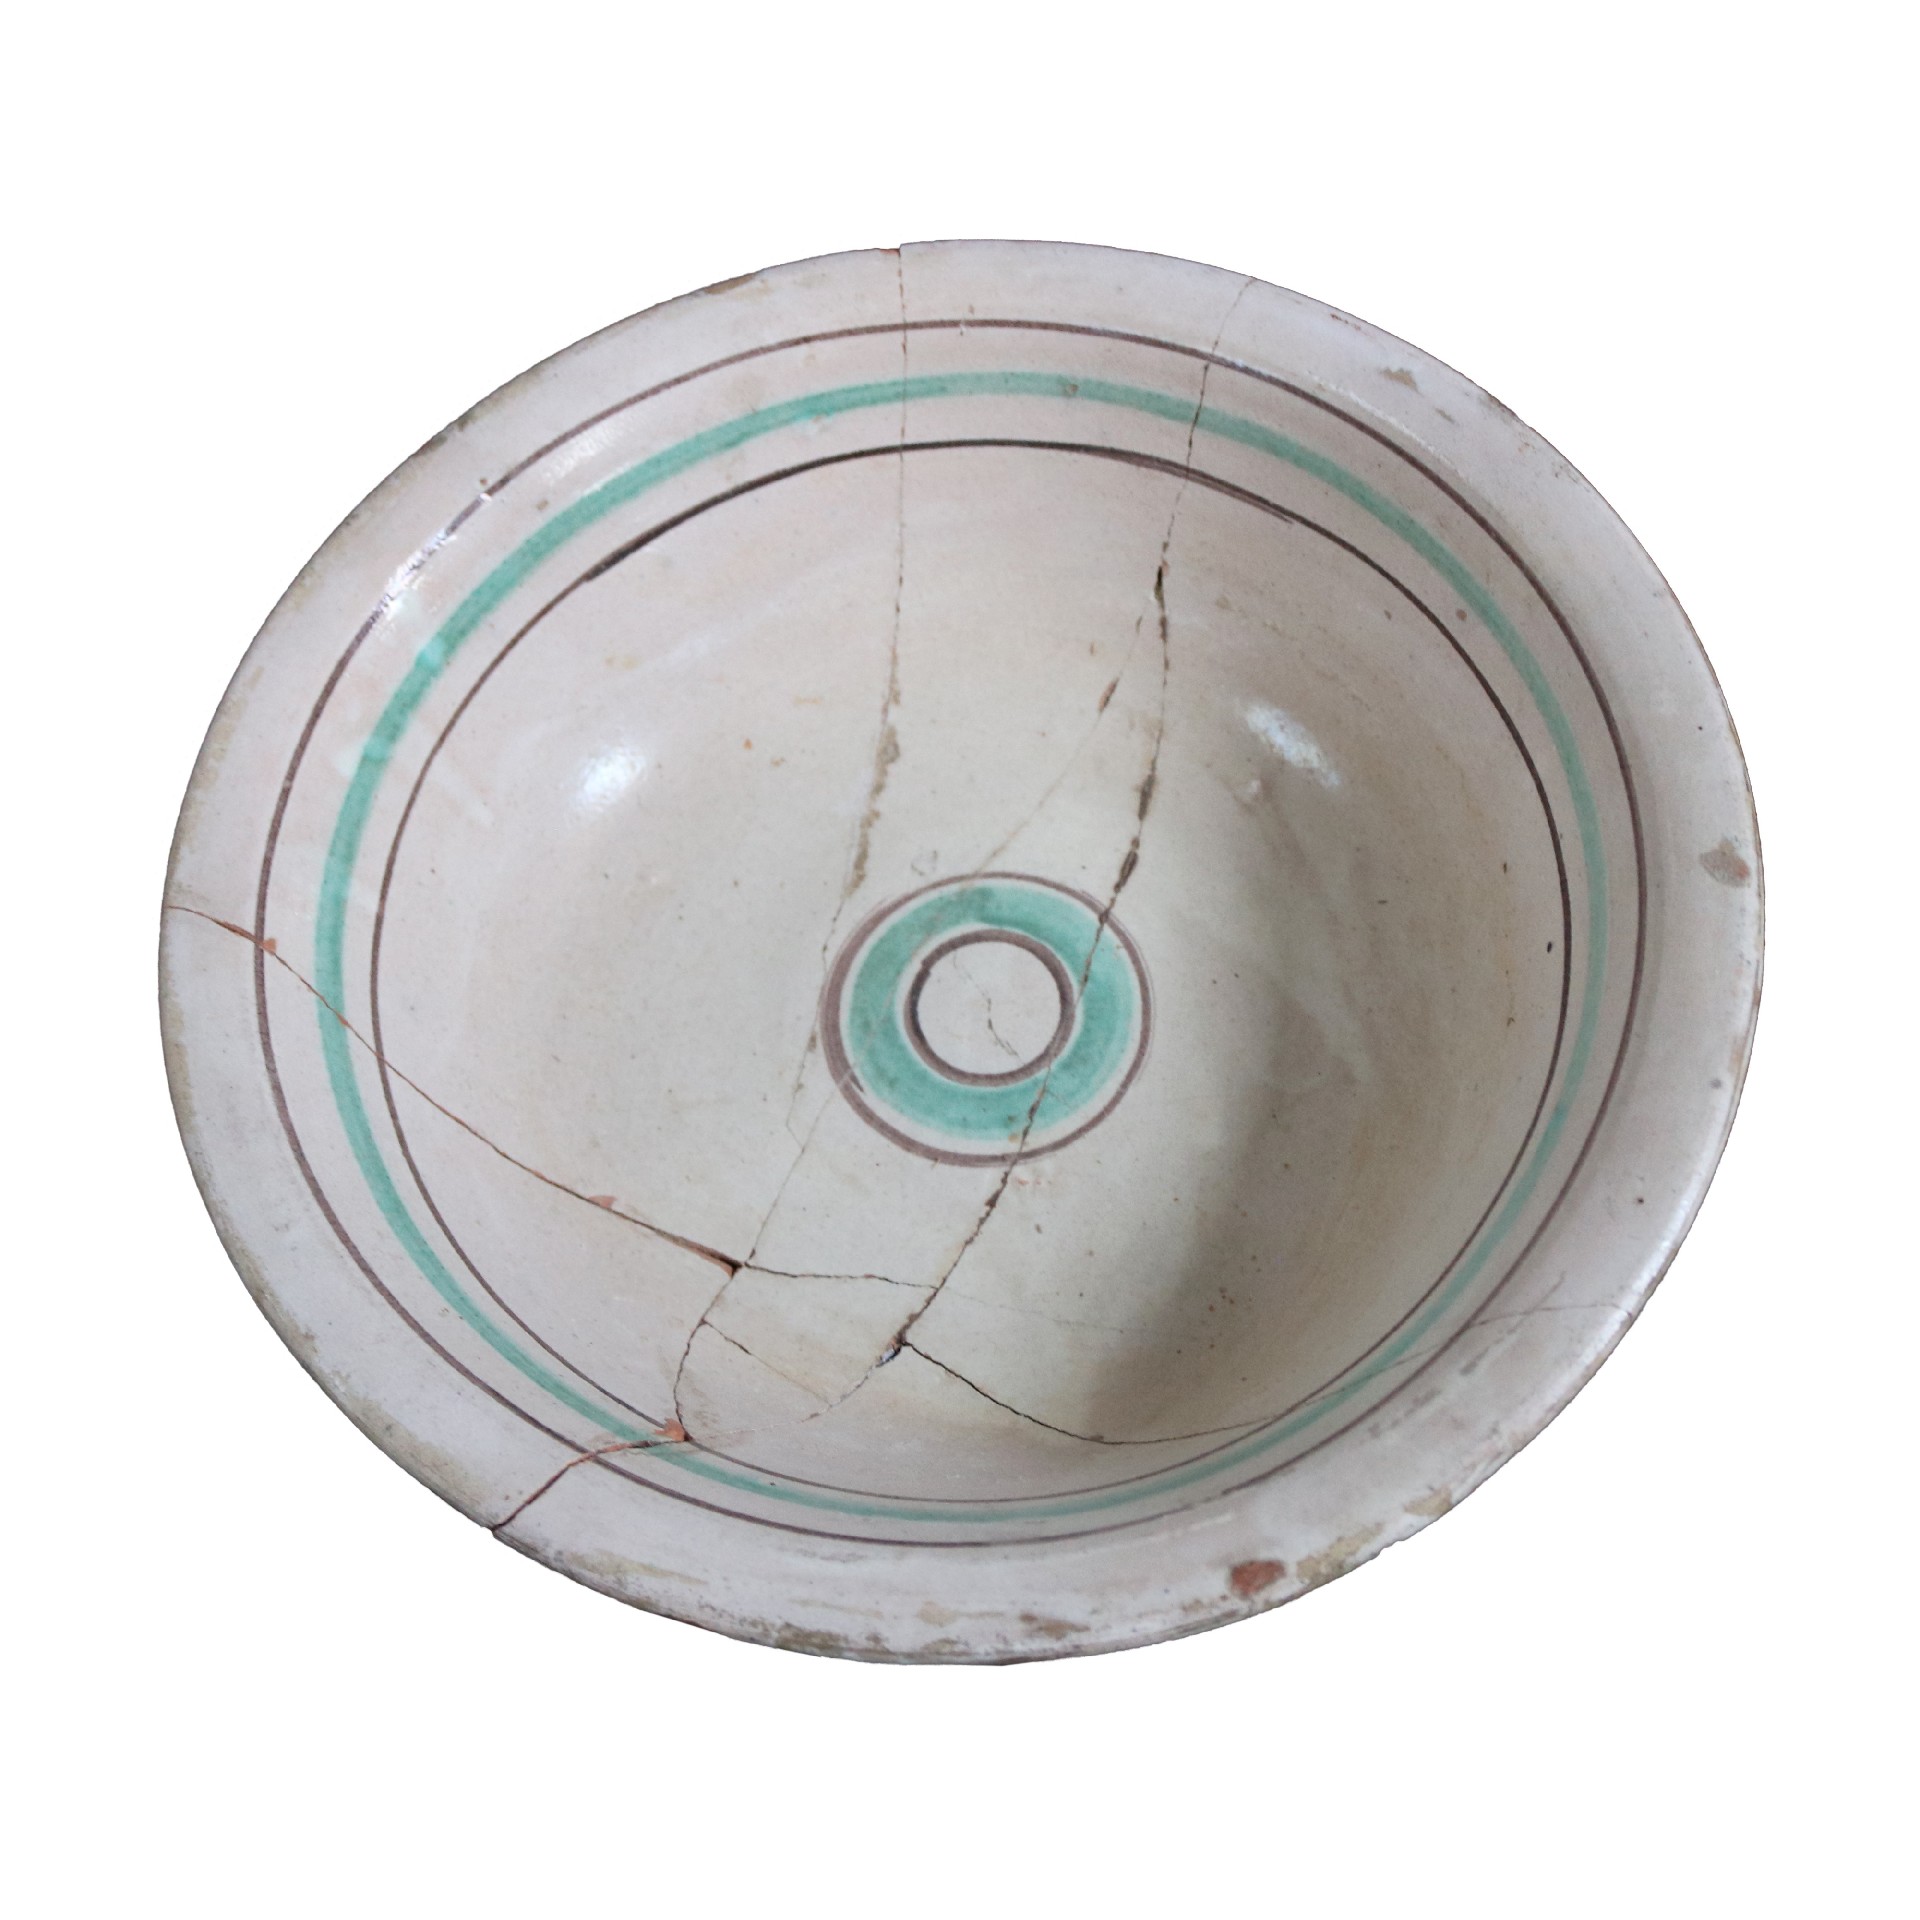 Antico catino in maiolica - Ceramiche - Oggettistica - Prodotti - Antichità Fiorillo